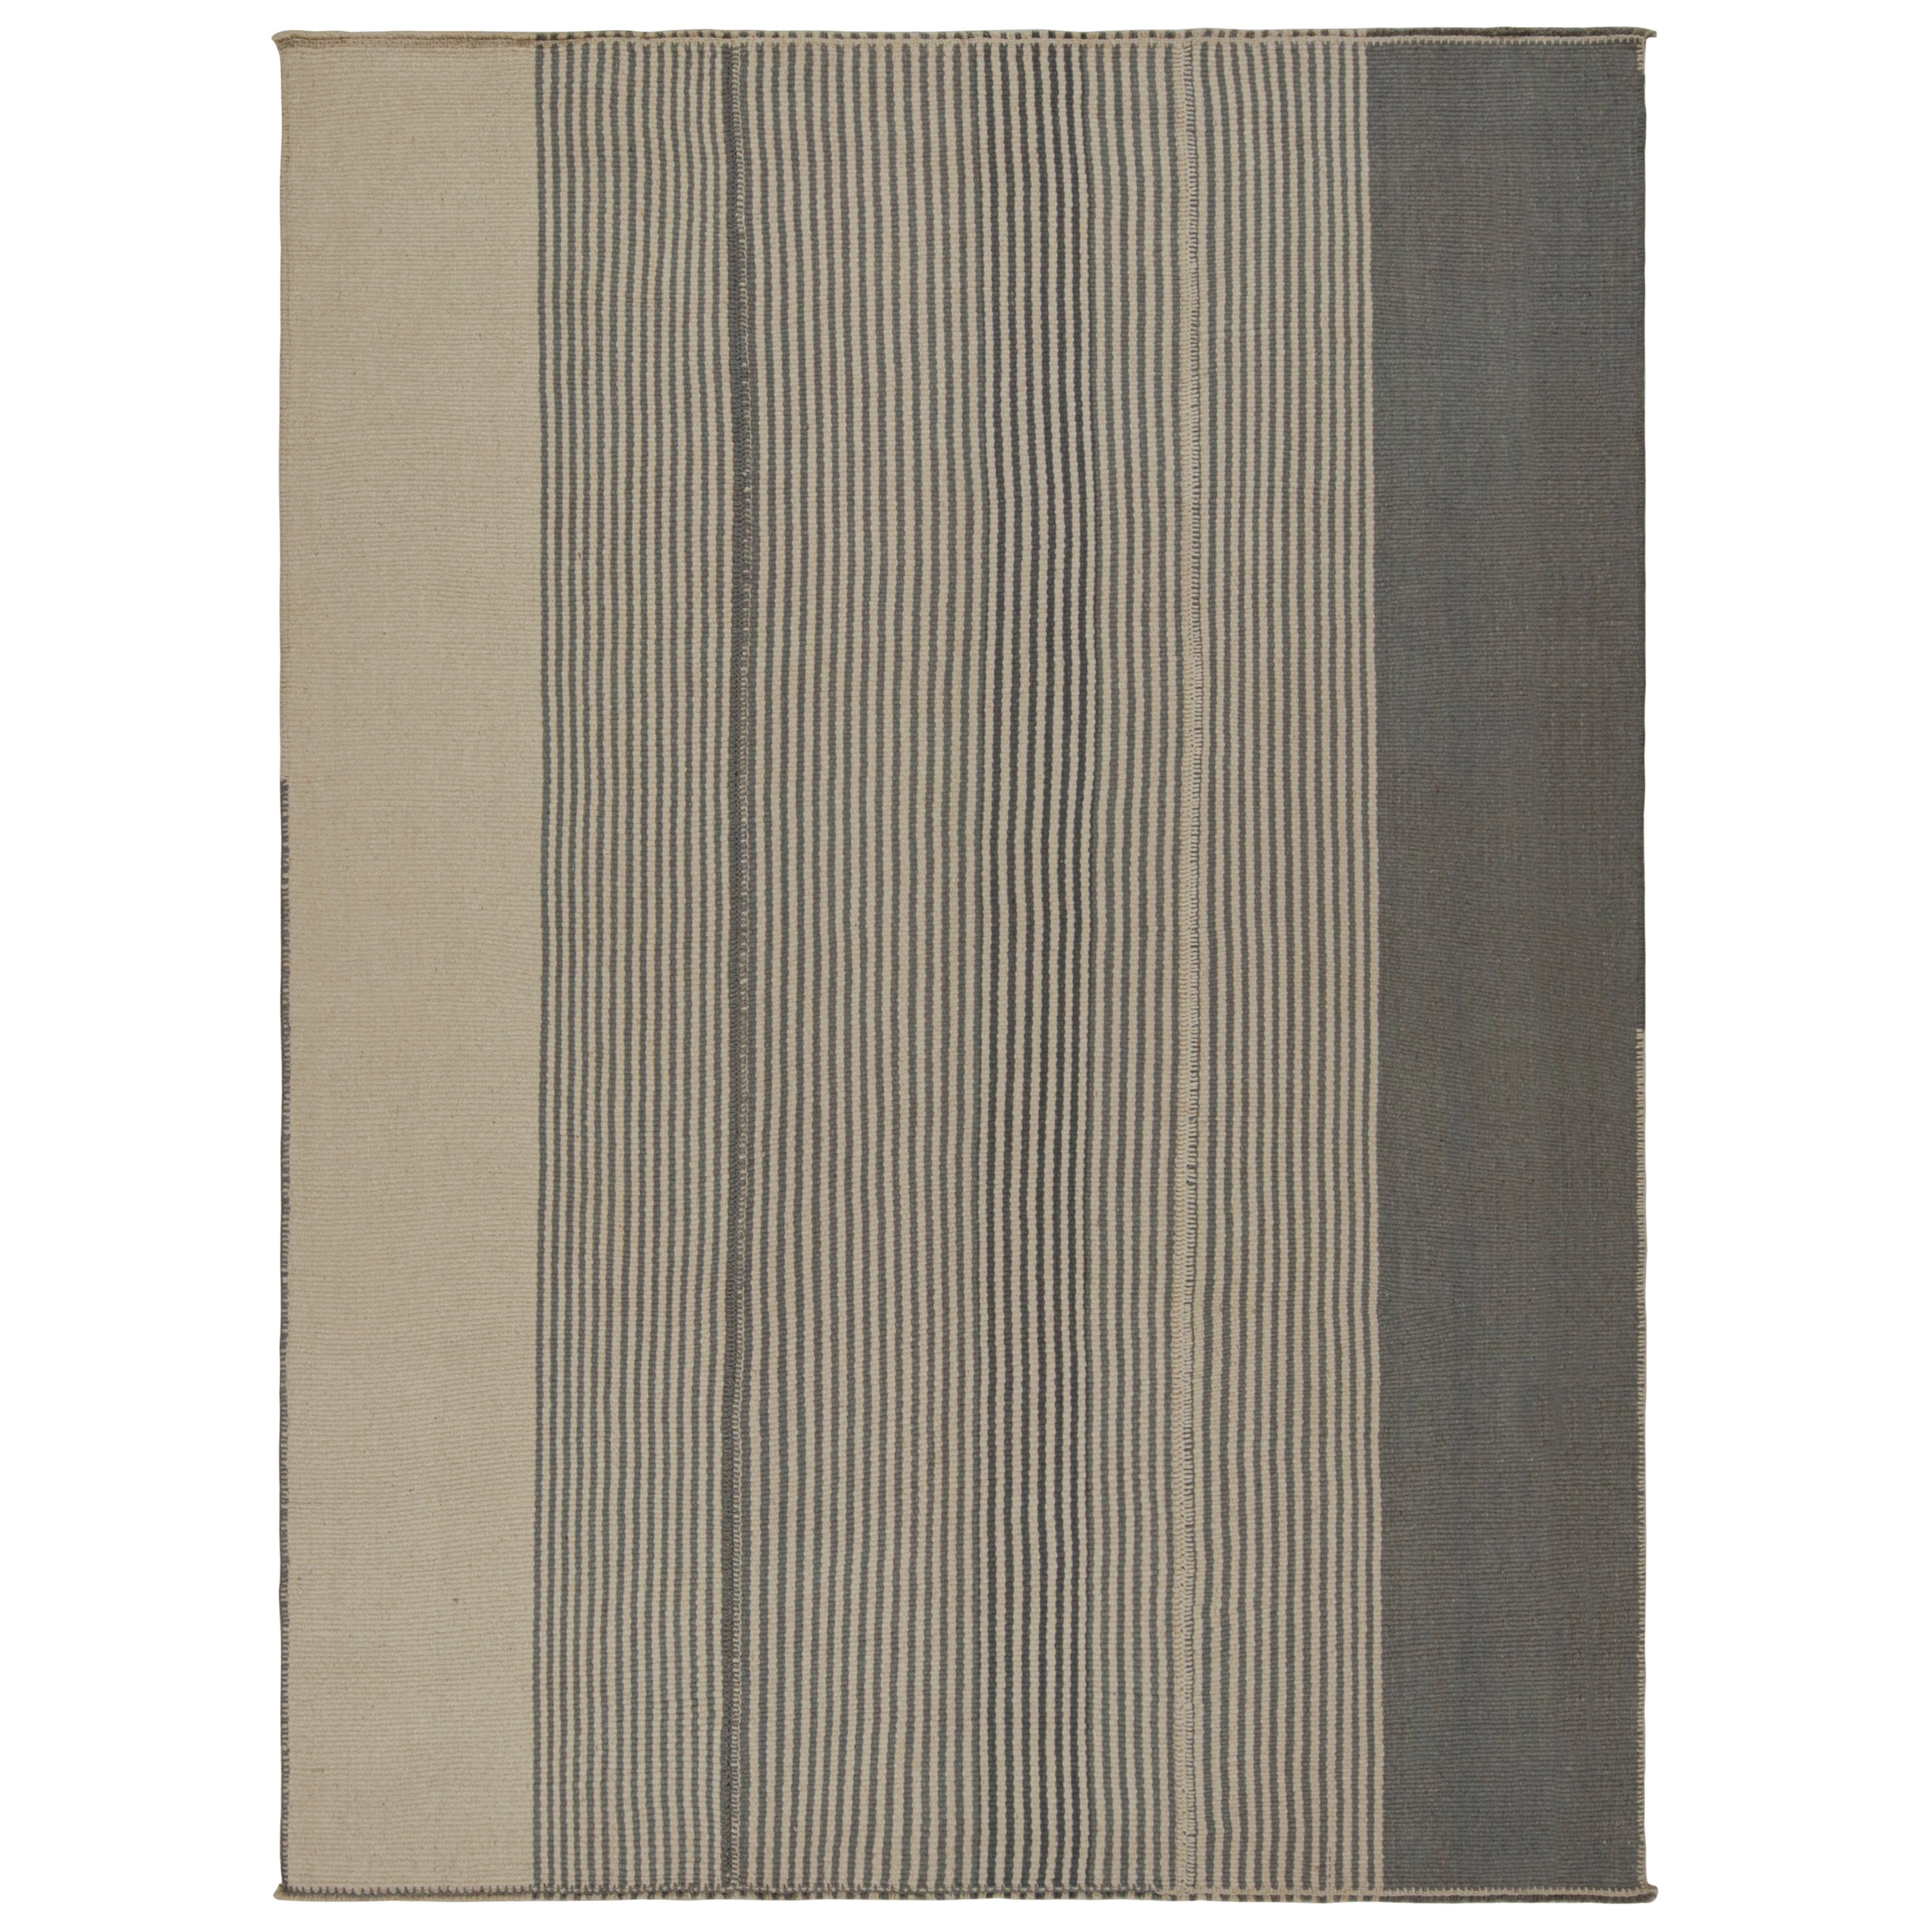 Rug & Kilim's Contemporary Kilim, mit vertikalen Streifen in Beige und Brown